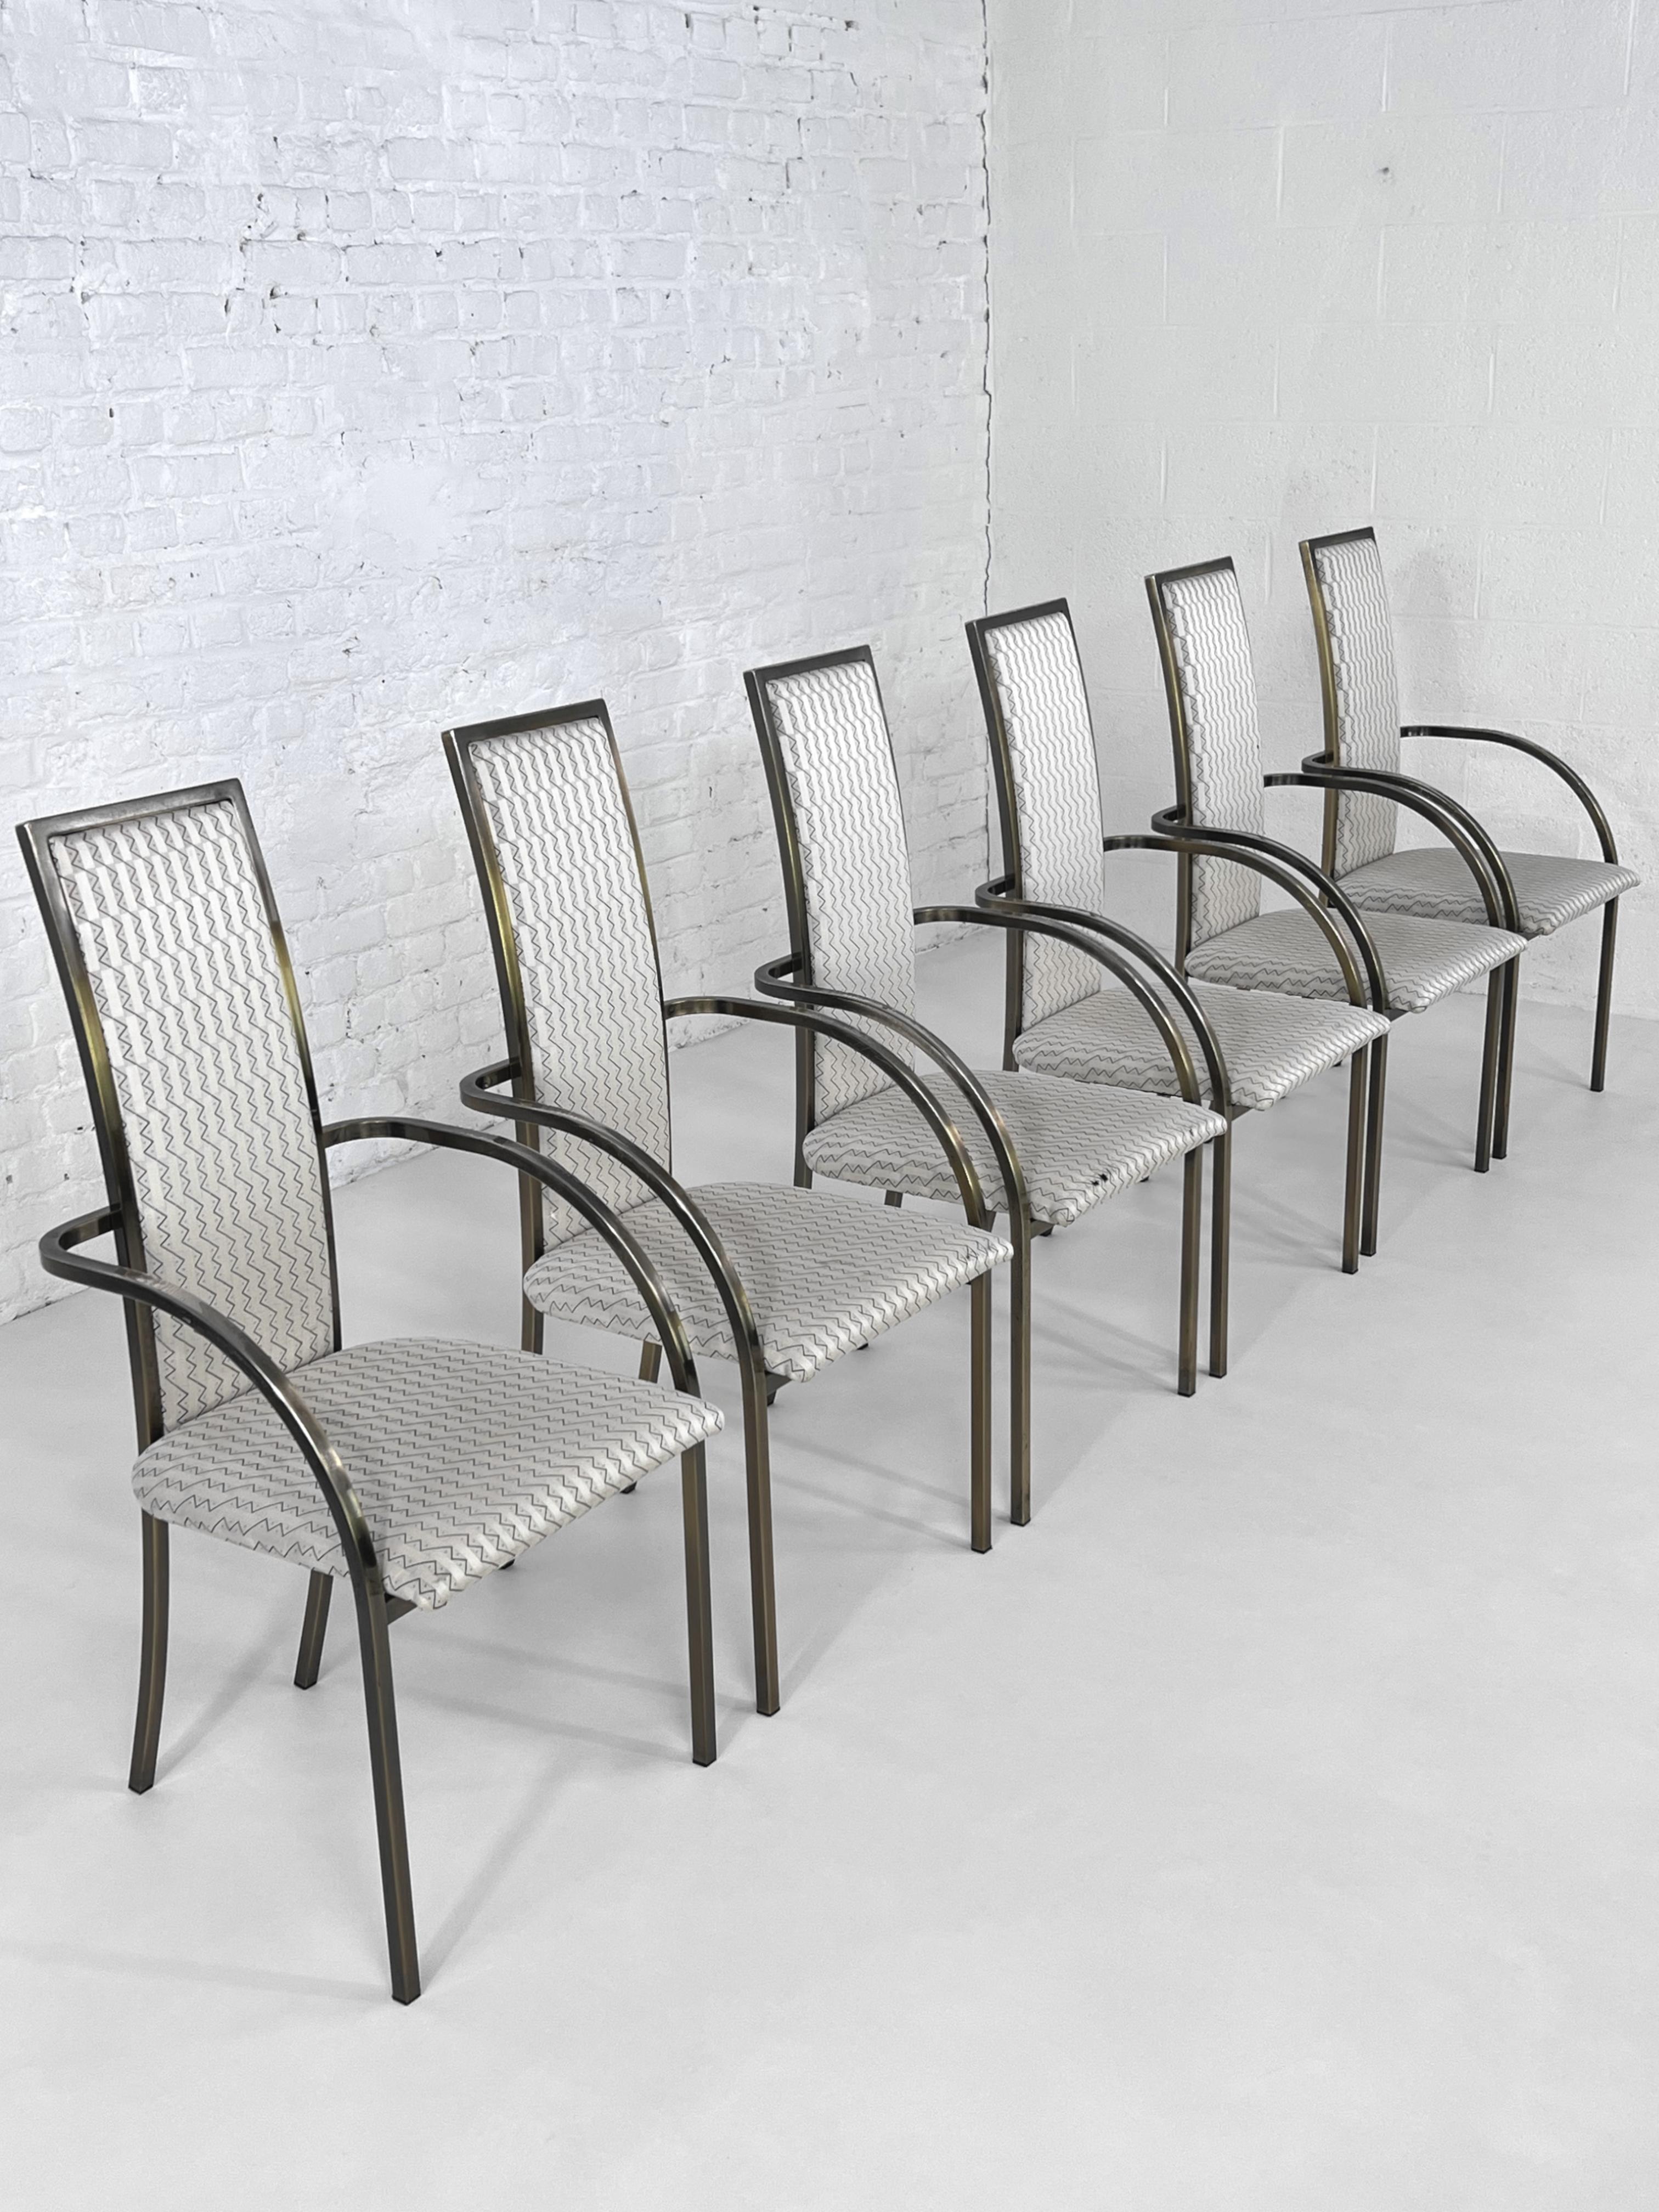 Satz von sechs Stühlen Design 1970er - 1980er Jahre Metall und Stoff von Belgo Chrom
BC Design, weltweit besser bekannt als Belgo Chrome, war (das Haus existiert heute nicht mehr) auf das Design und die Produktion von hochwertigen Möbeln,